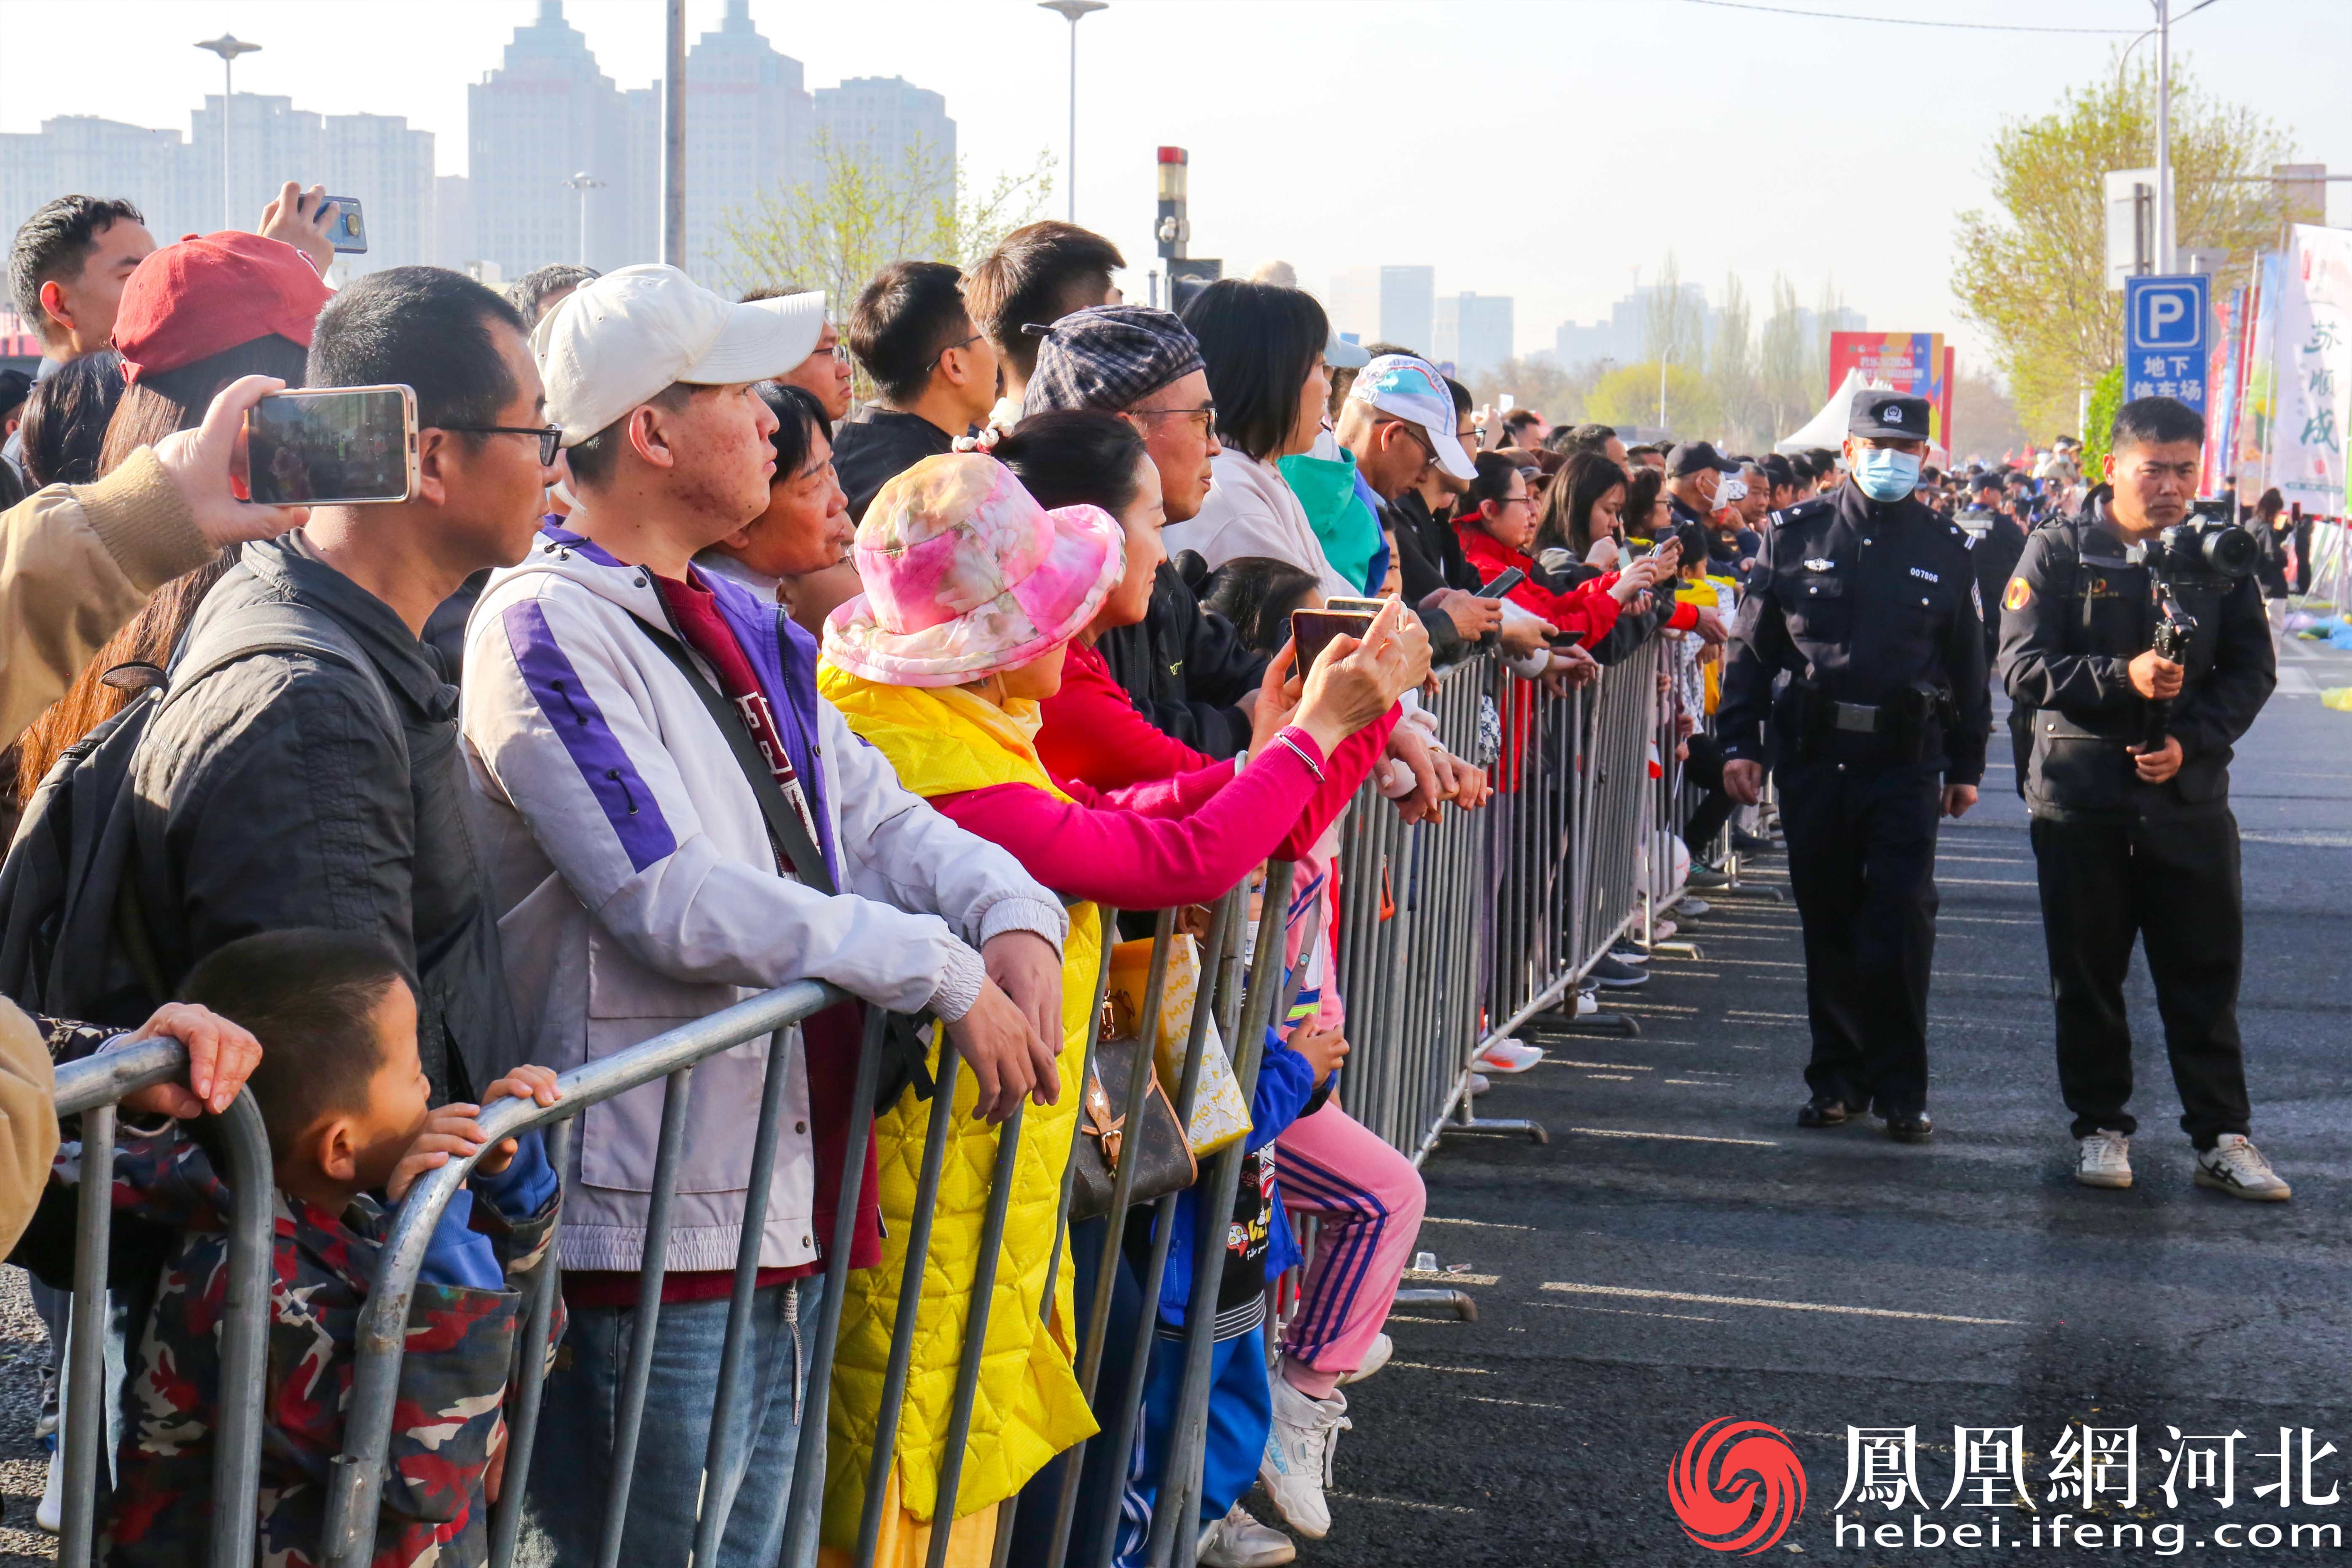 马拉松比赛吸引了大量观众前来观看热闹非凡。观众们聚集在赛道两旁，为比赛增添了浓厚的氛围。